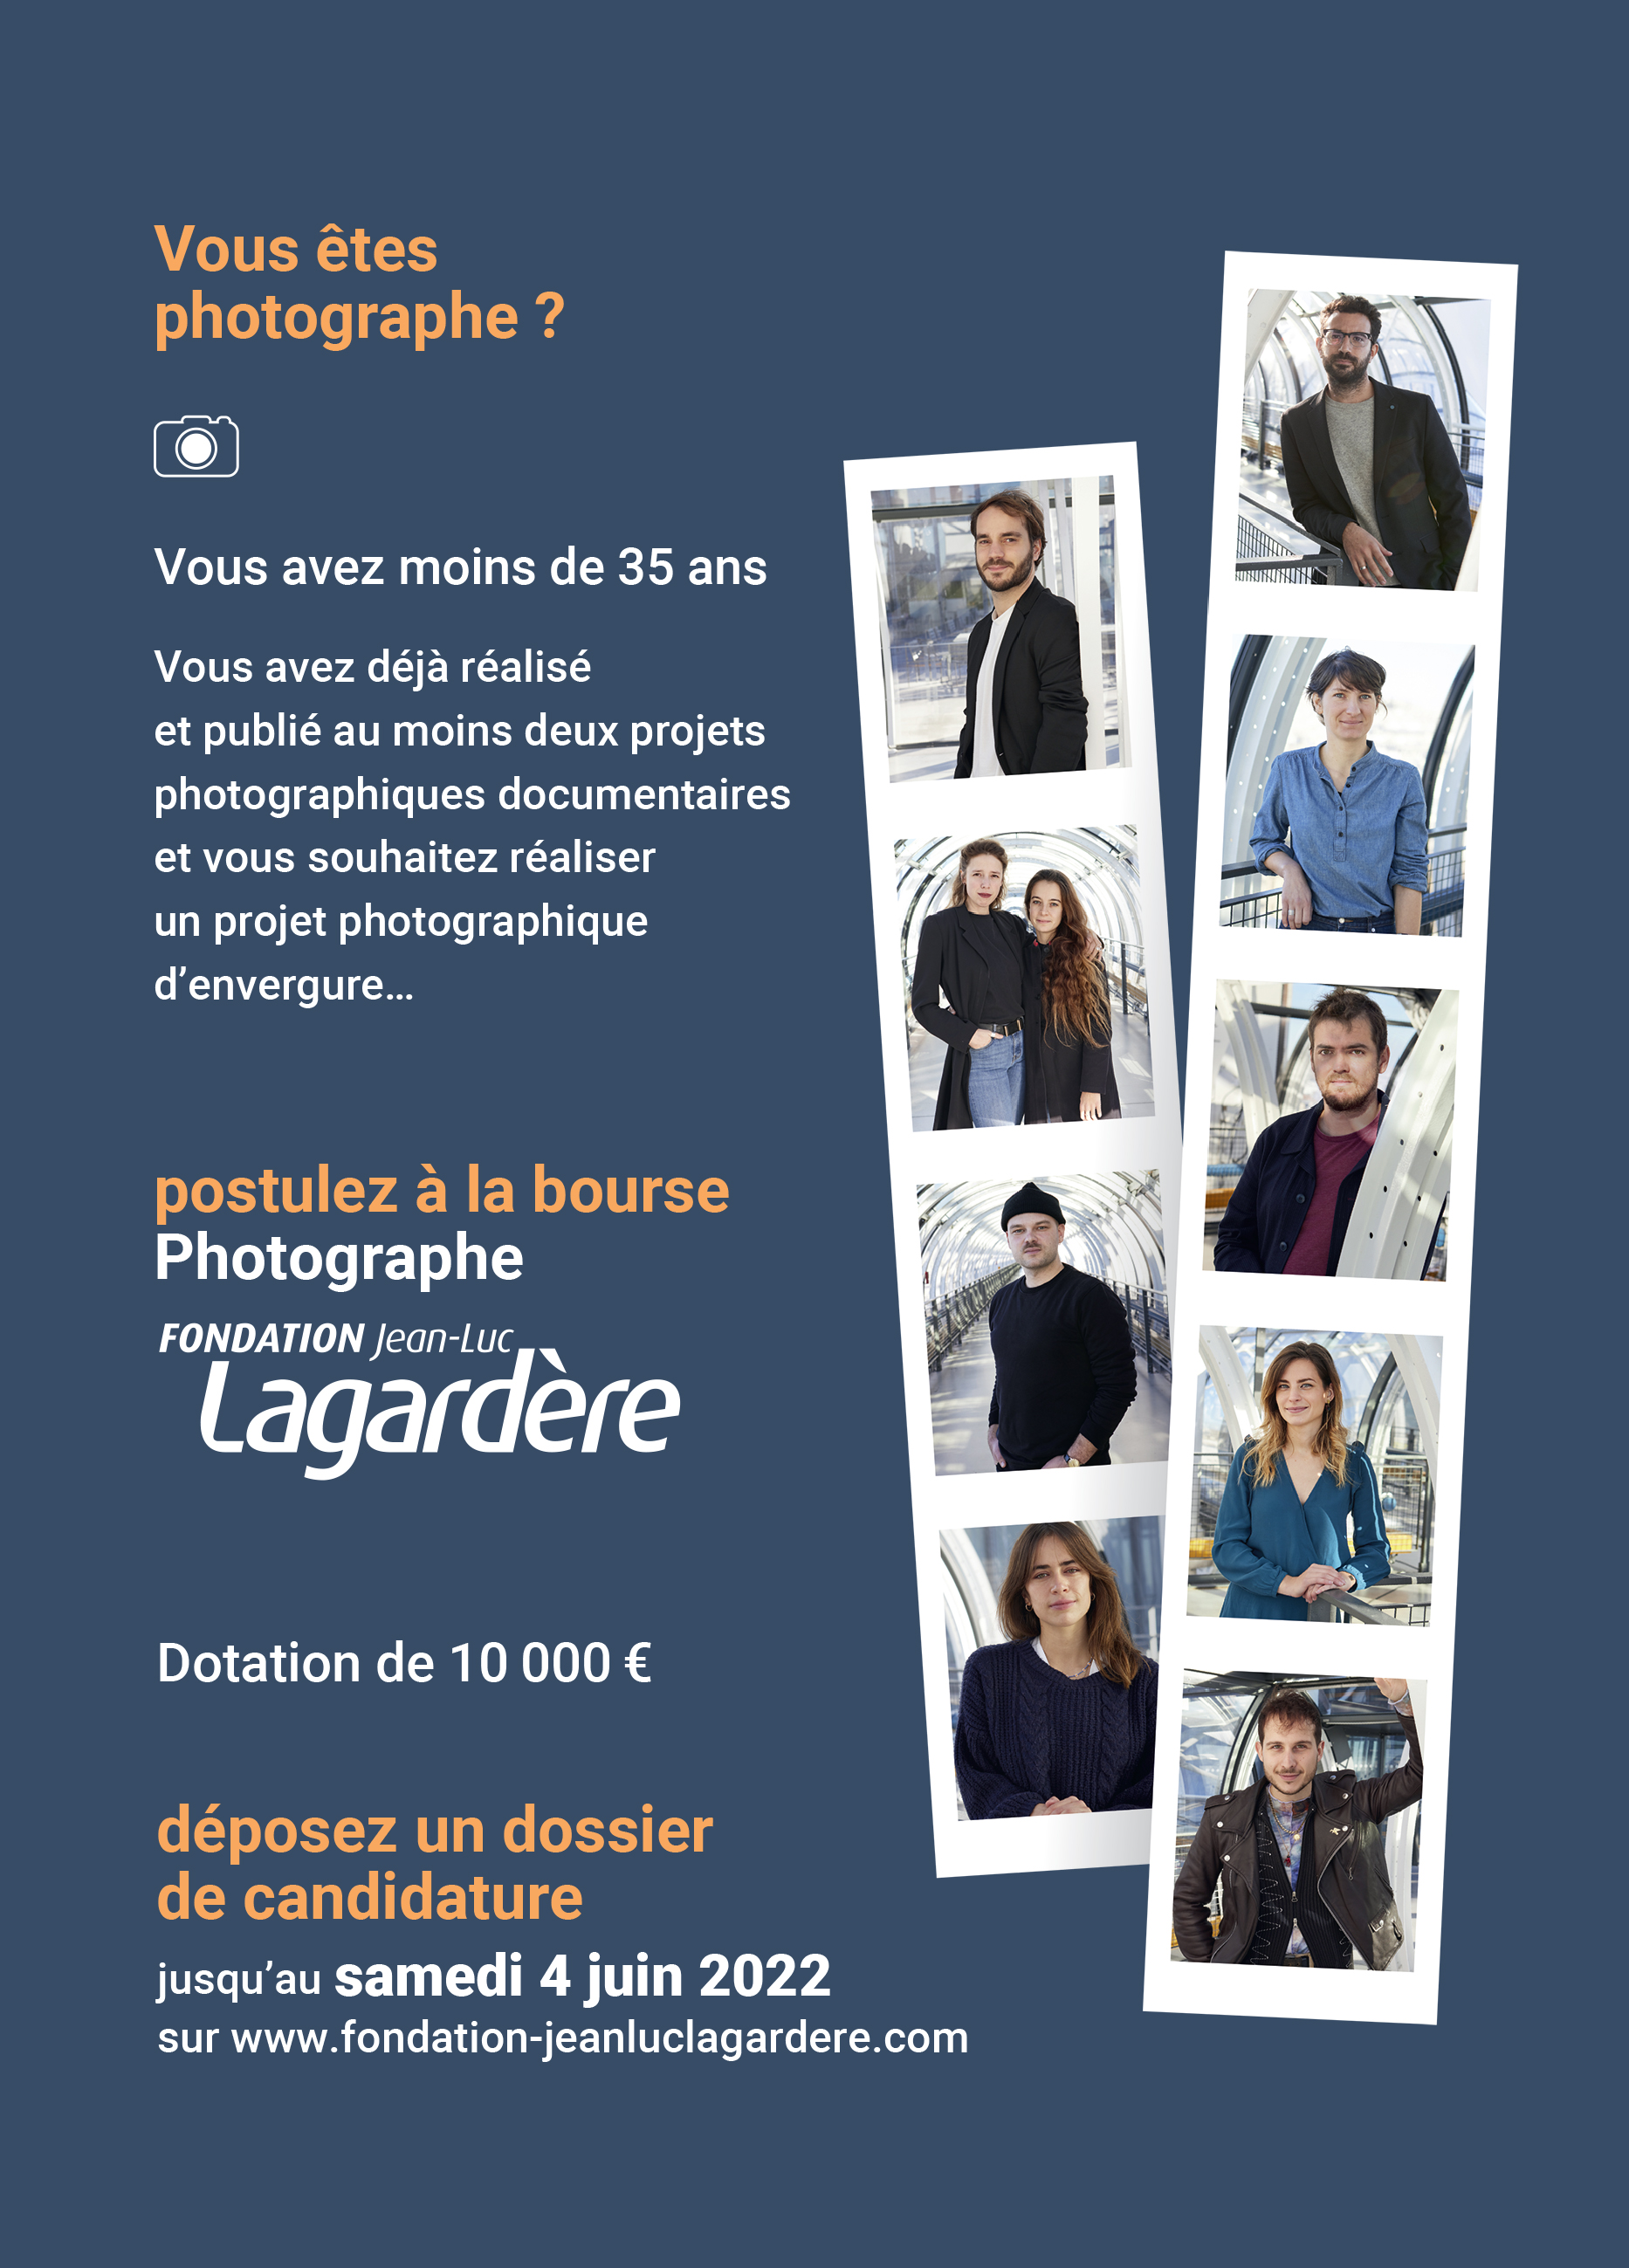 Bourse Lagardère 2022 - Photographe